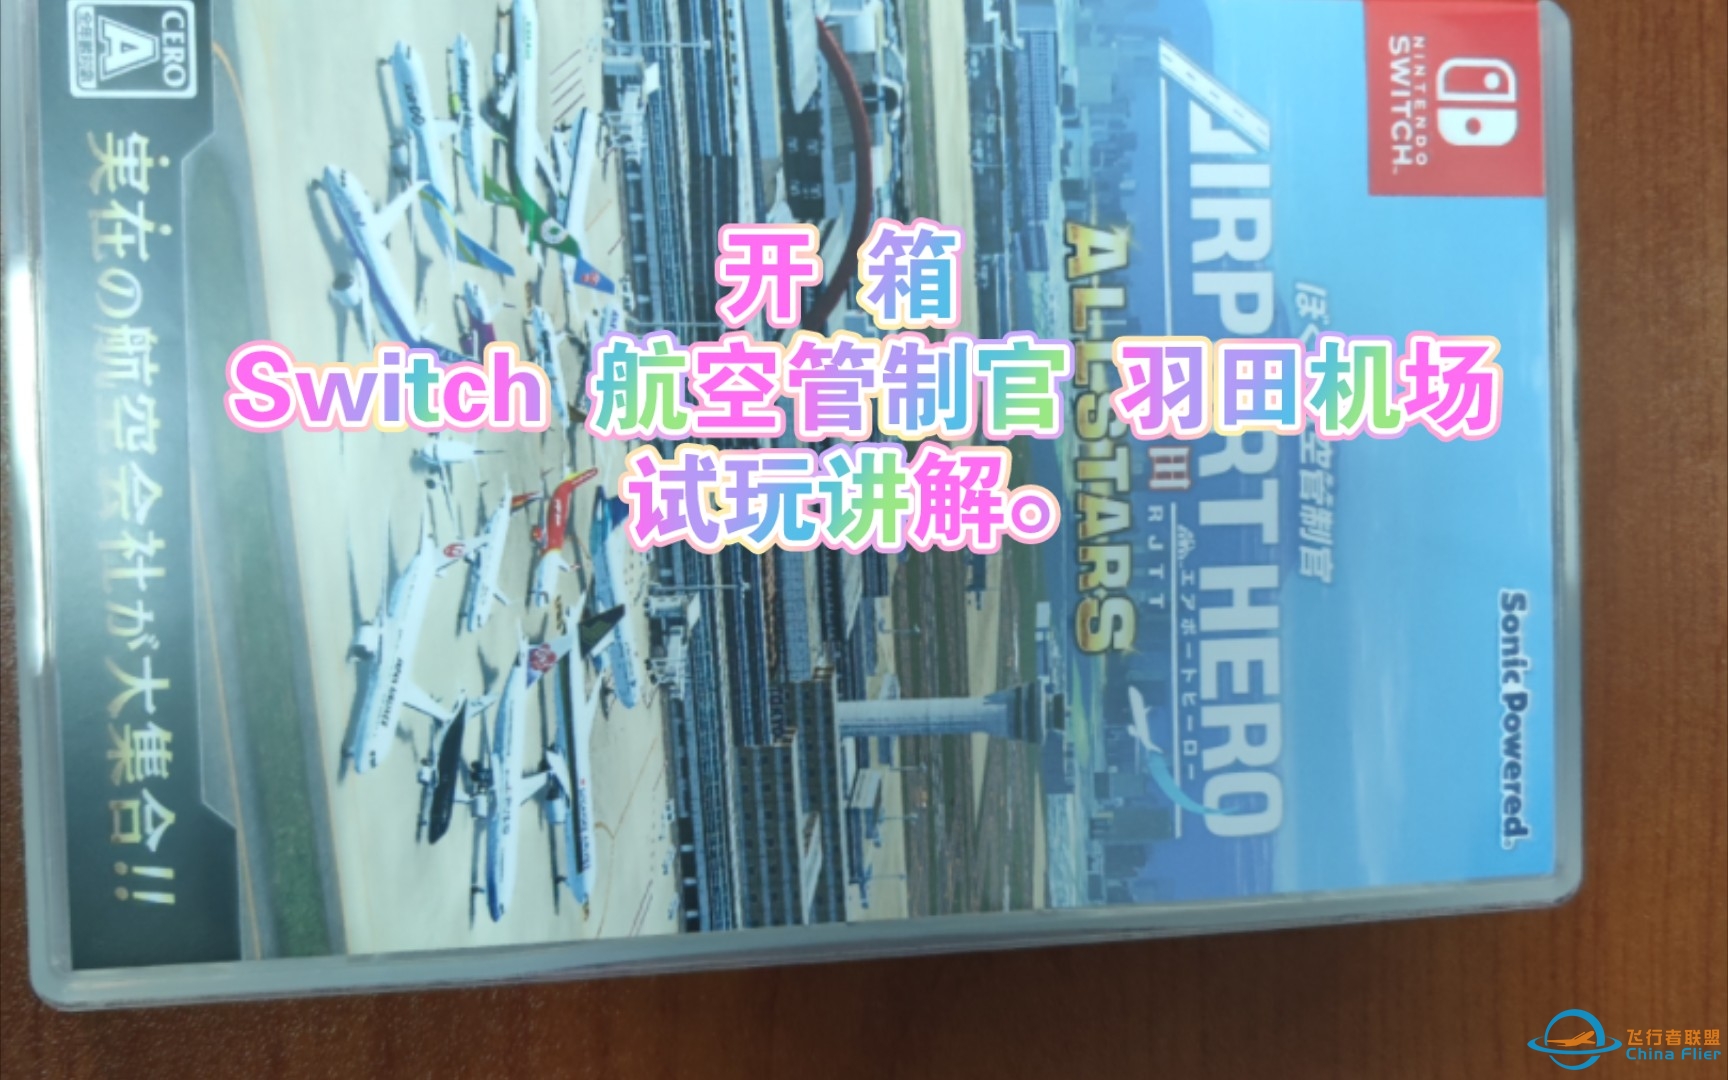 开箱 Switch 航空管制官 羽田机场及试玩讲解。-9518 